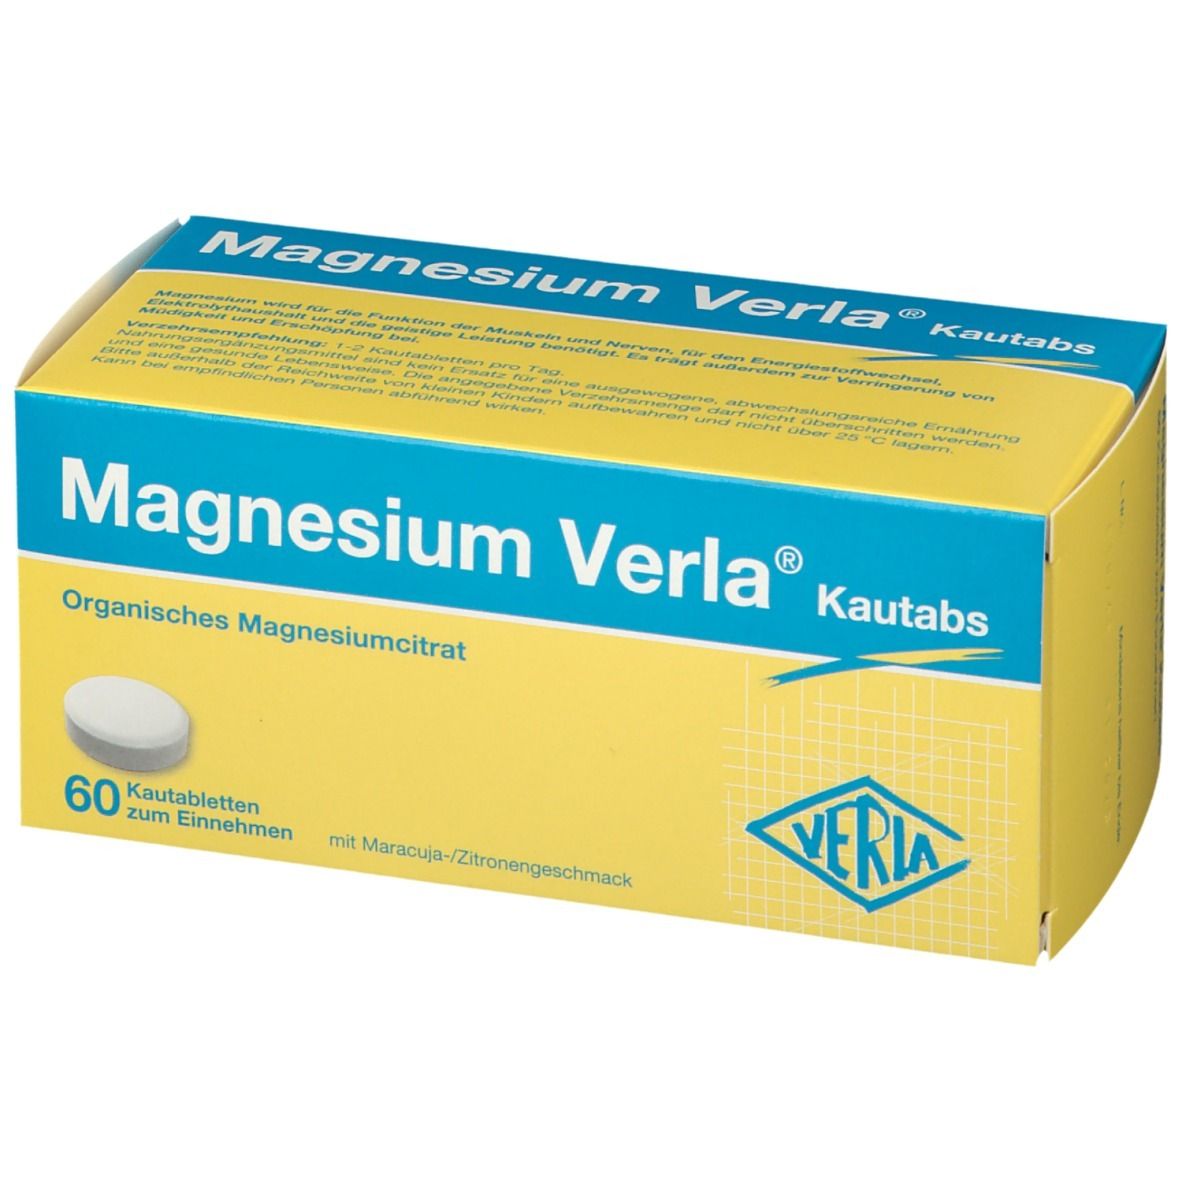 Magnesium Verla®